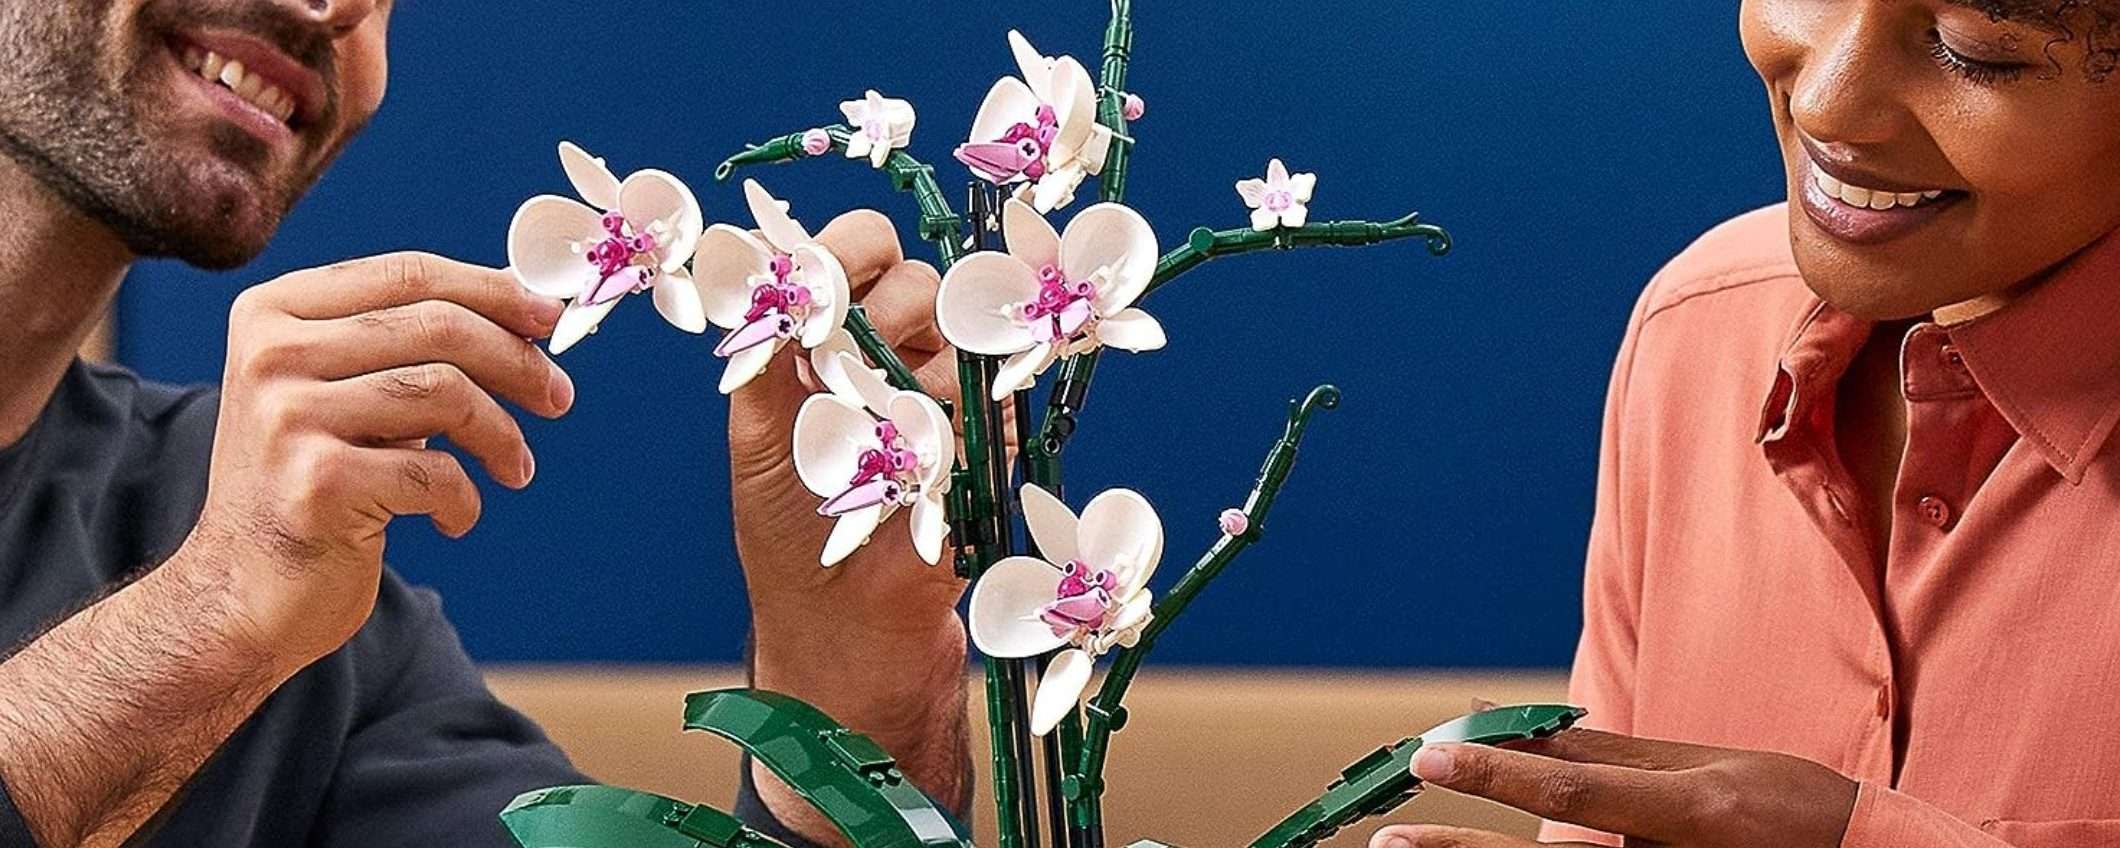 LEGO Orchidea: ULTIME ORE per lo SCONTO su Amazon